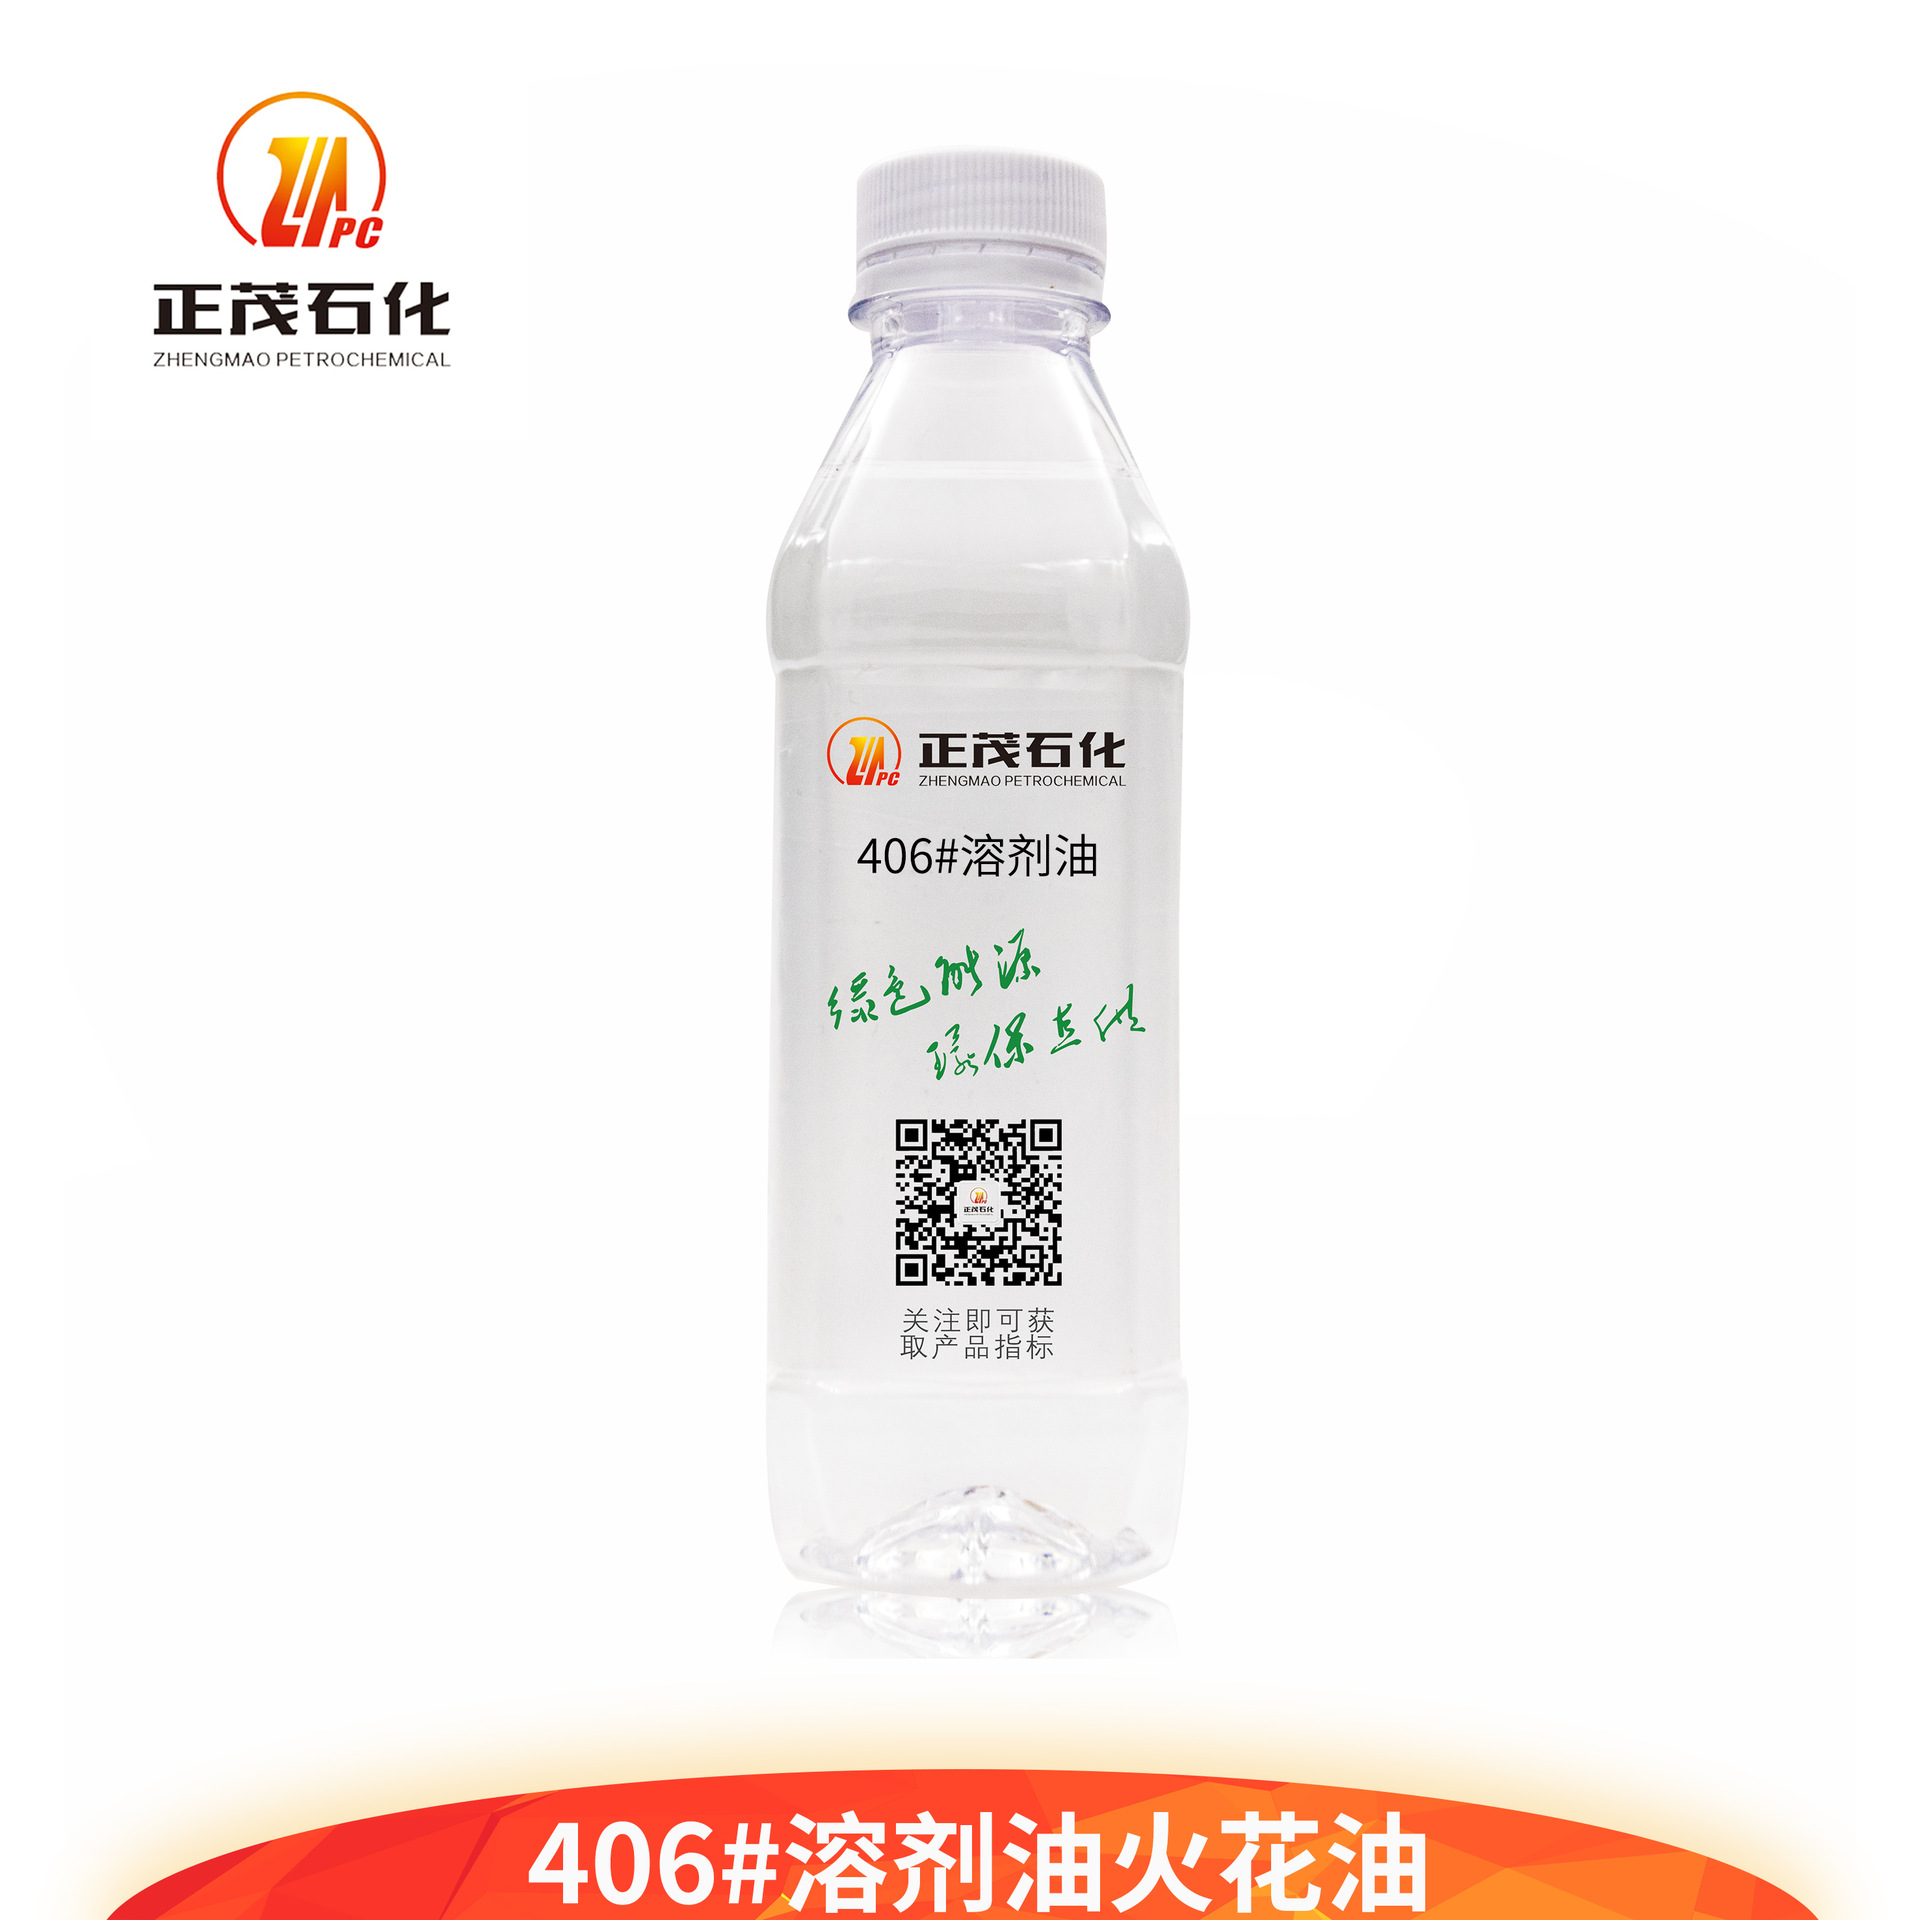 熱銷PVC增塑劑-406#環保型溶劑油 塑料塑化劑認準廣東正茂石化！